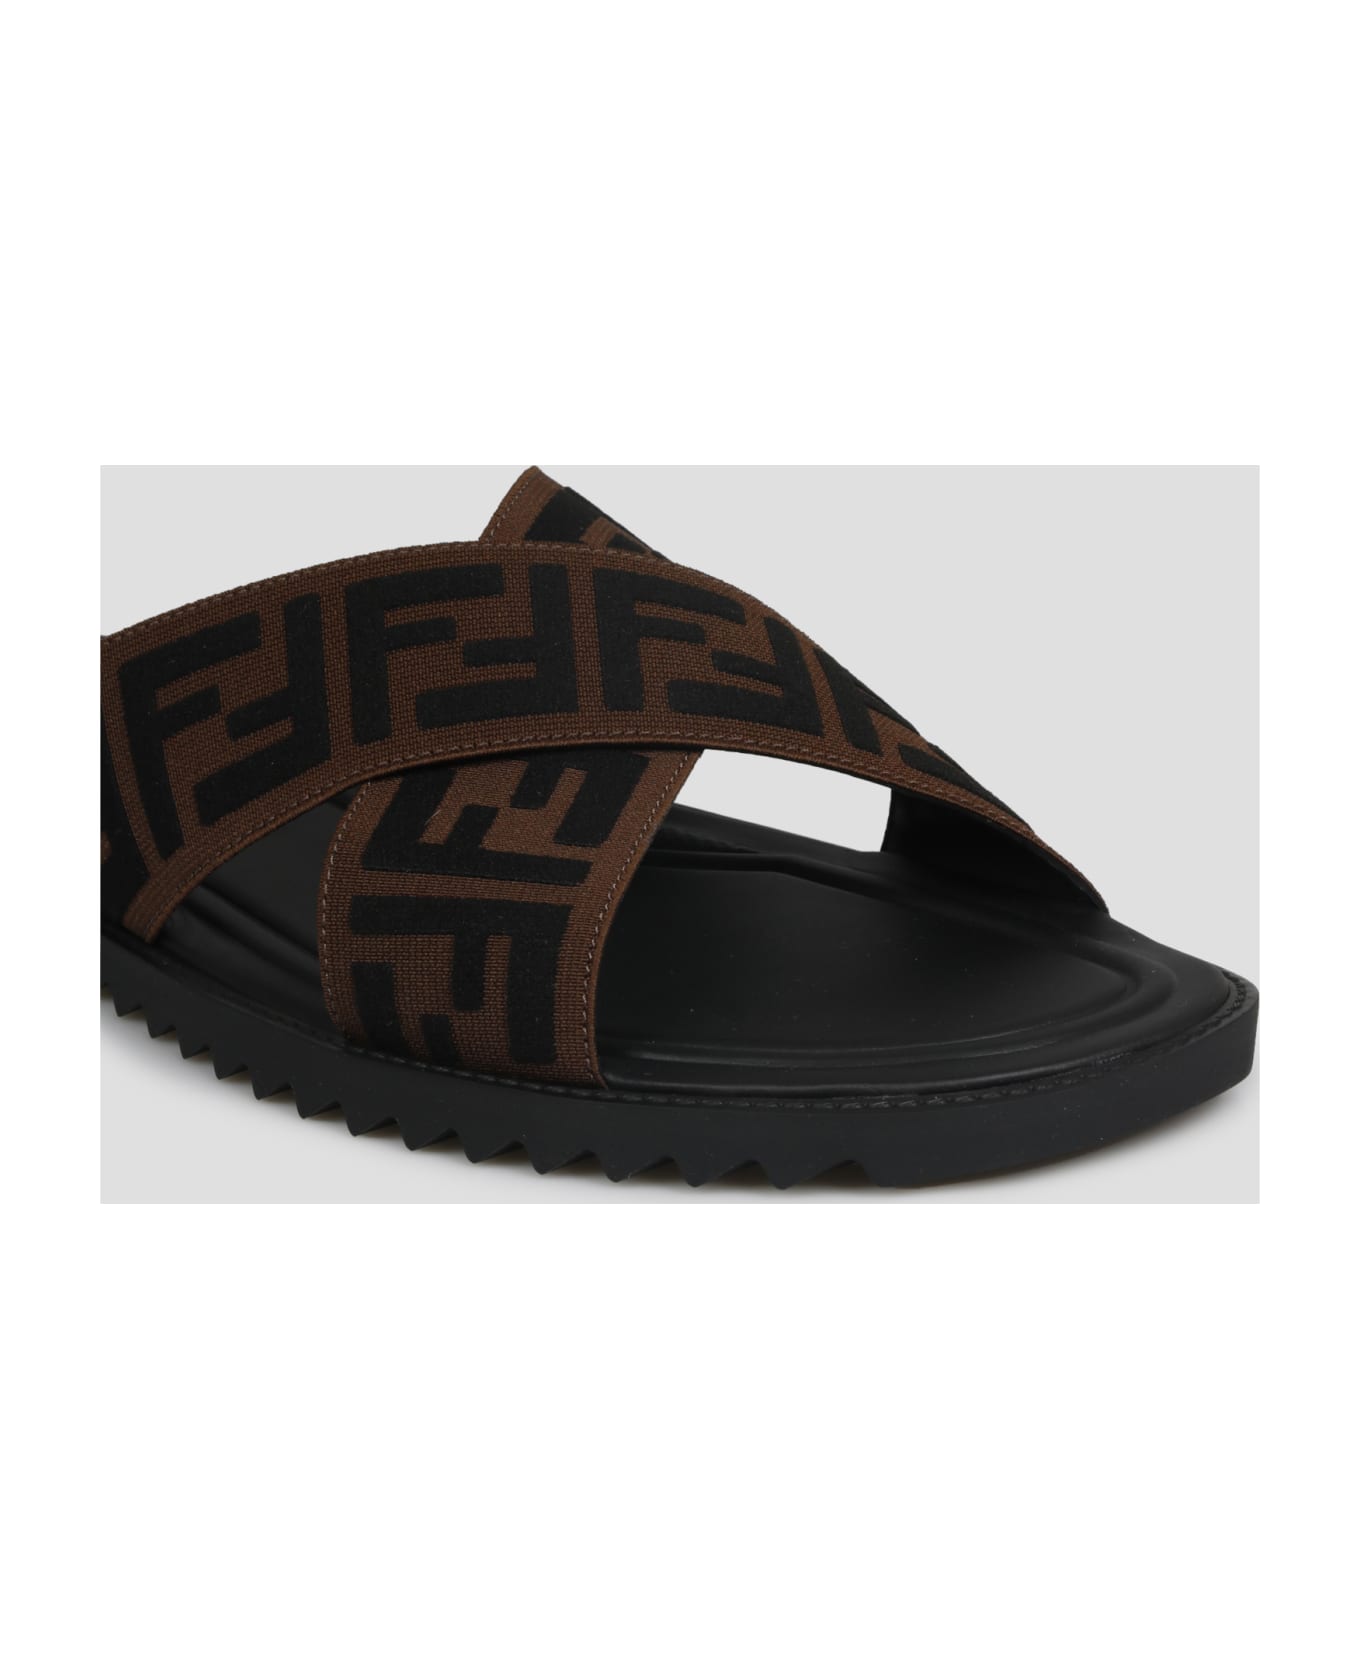 Fendi Ff Slide Sandals - Brown